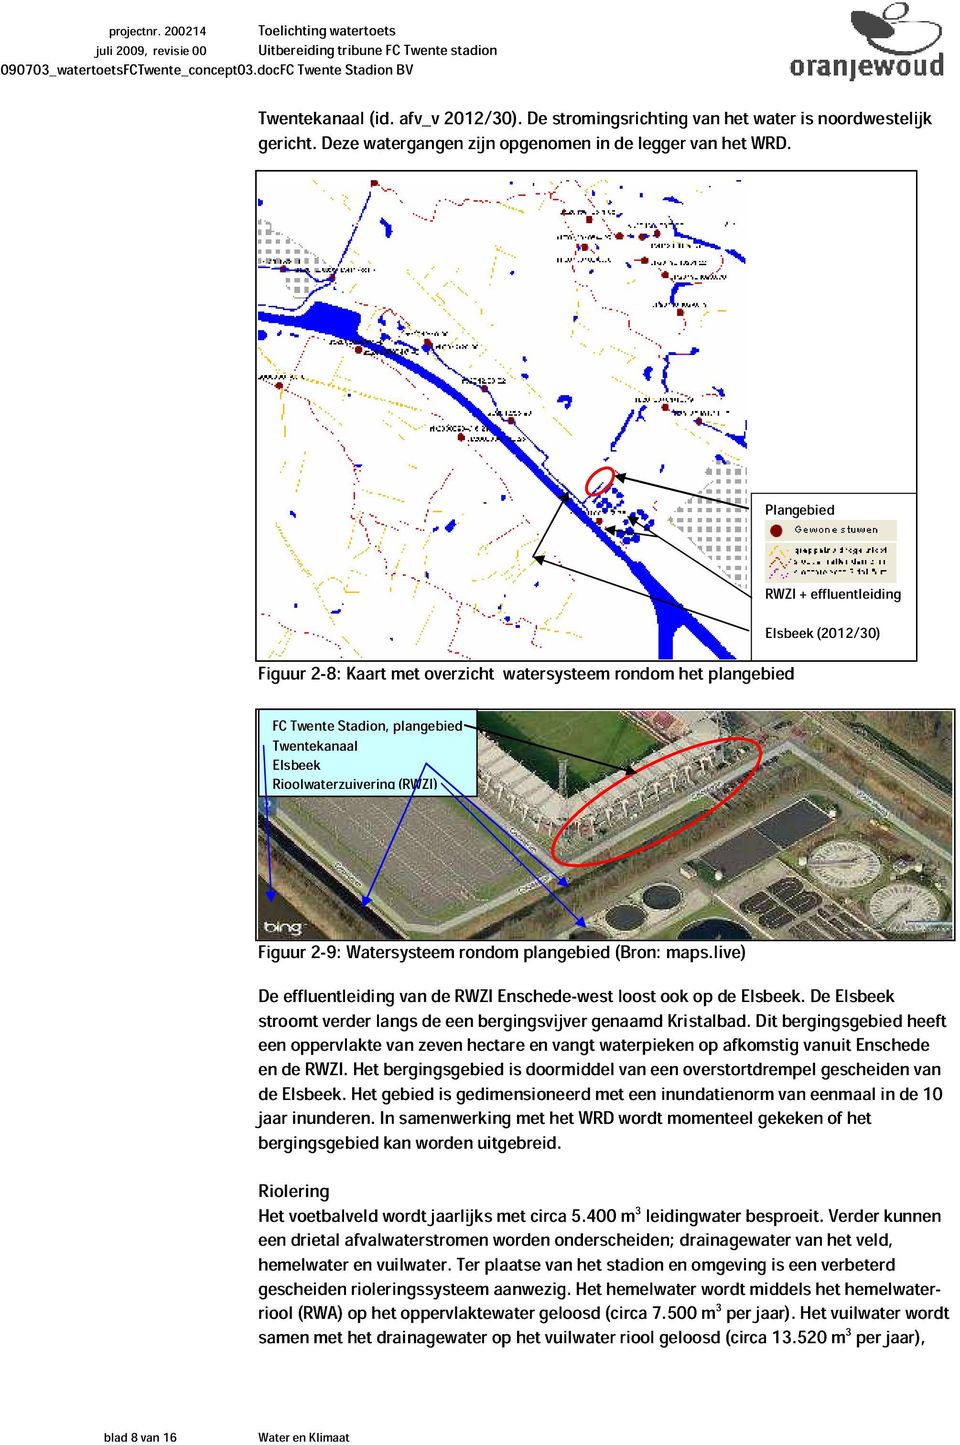 Figuur 2-9: Watersysteem rondom plangebied (Bron: maps.live) De effluentleiding van de RWZI Enschede-west loost ook op de Elsbeek.